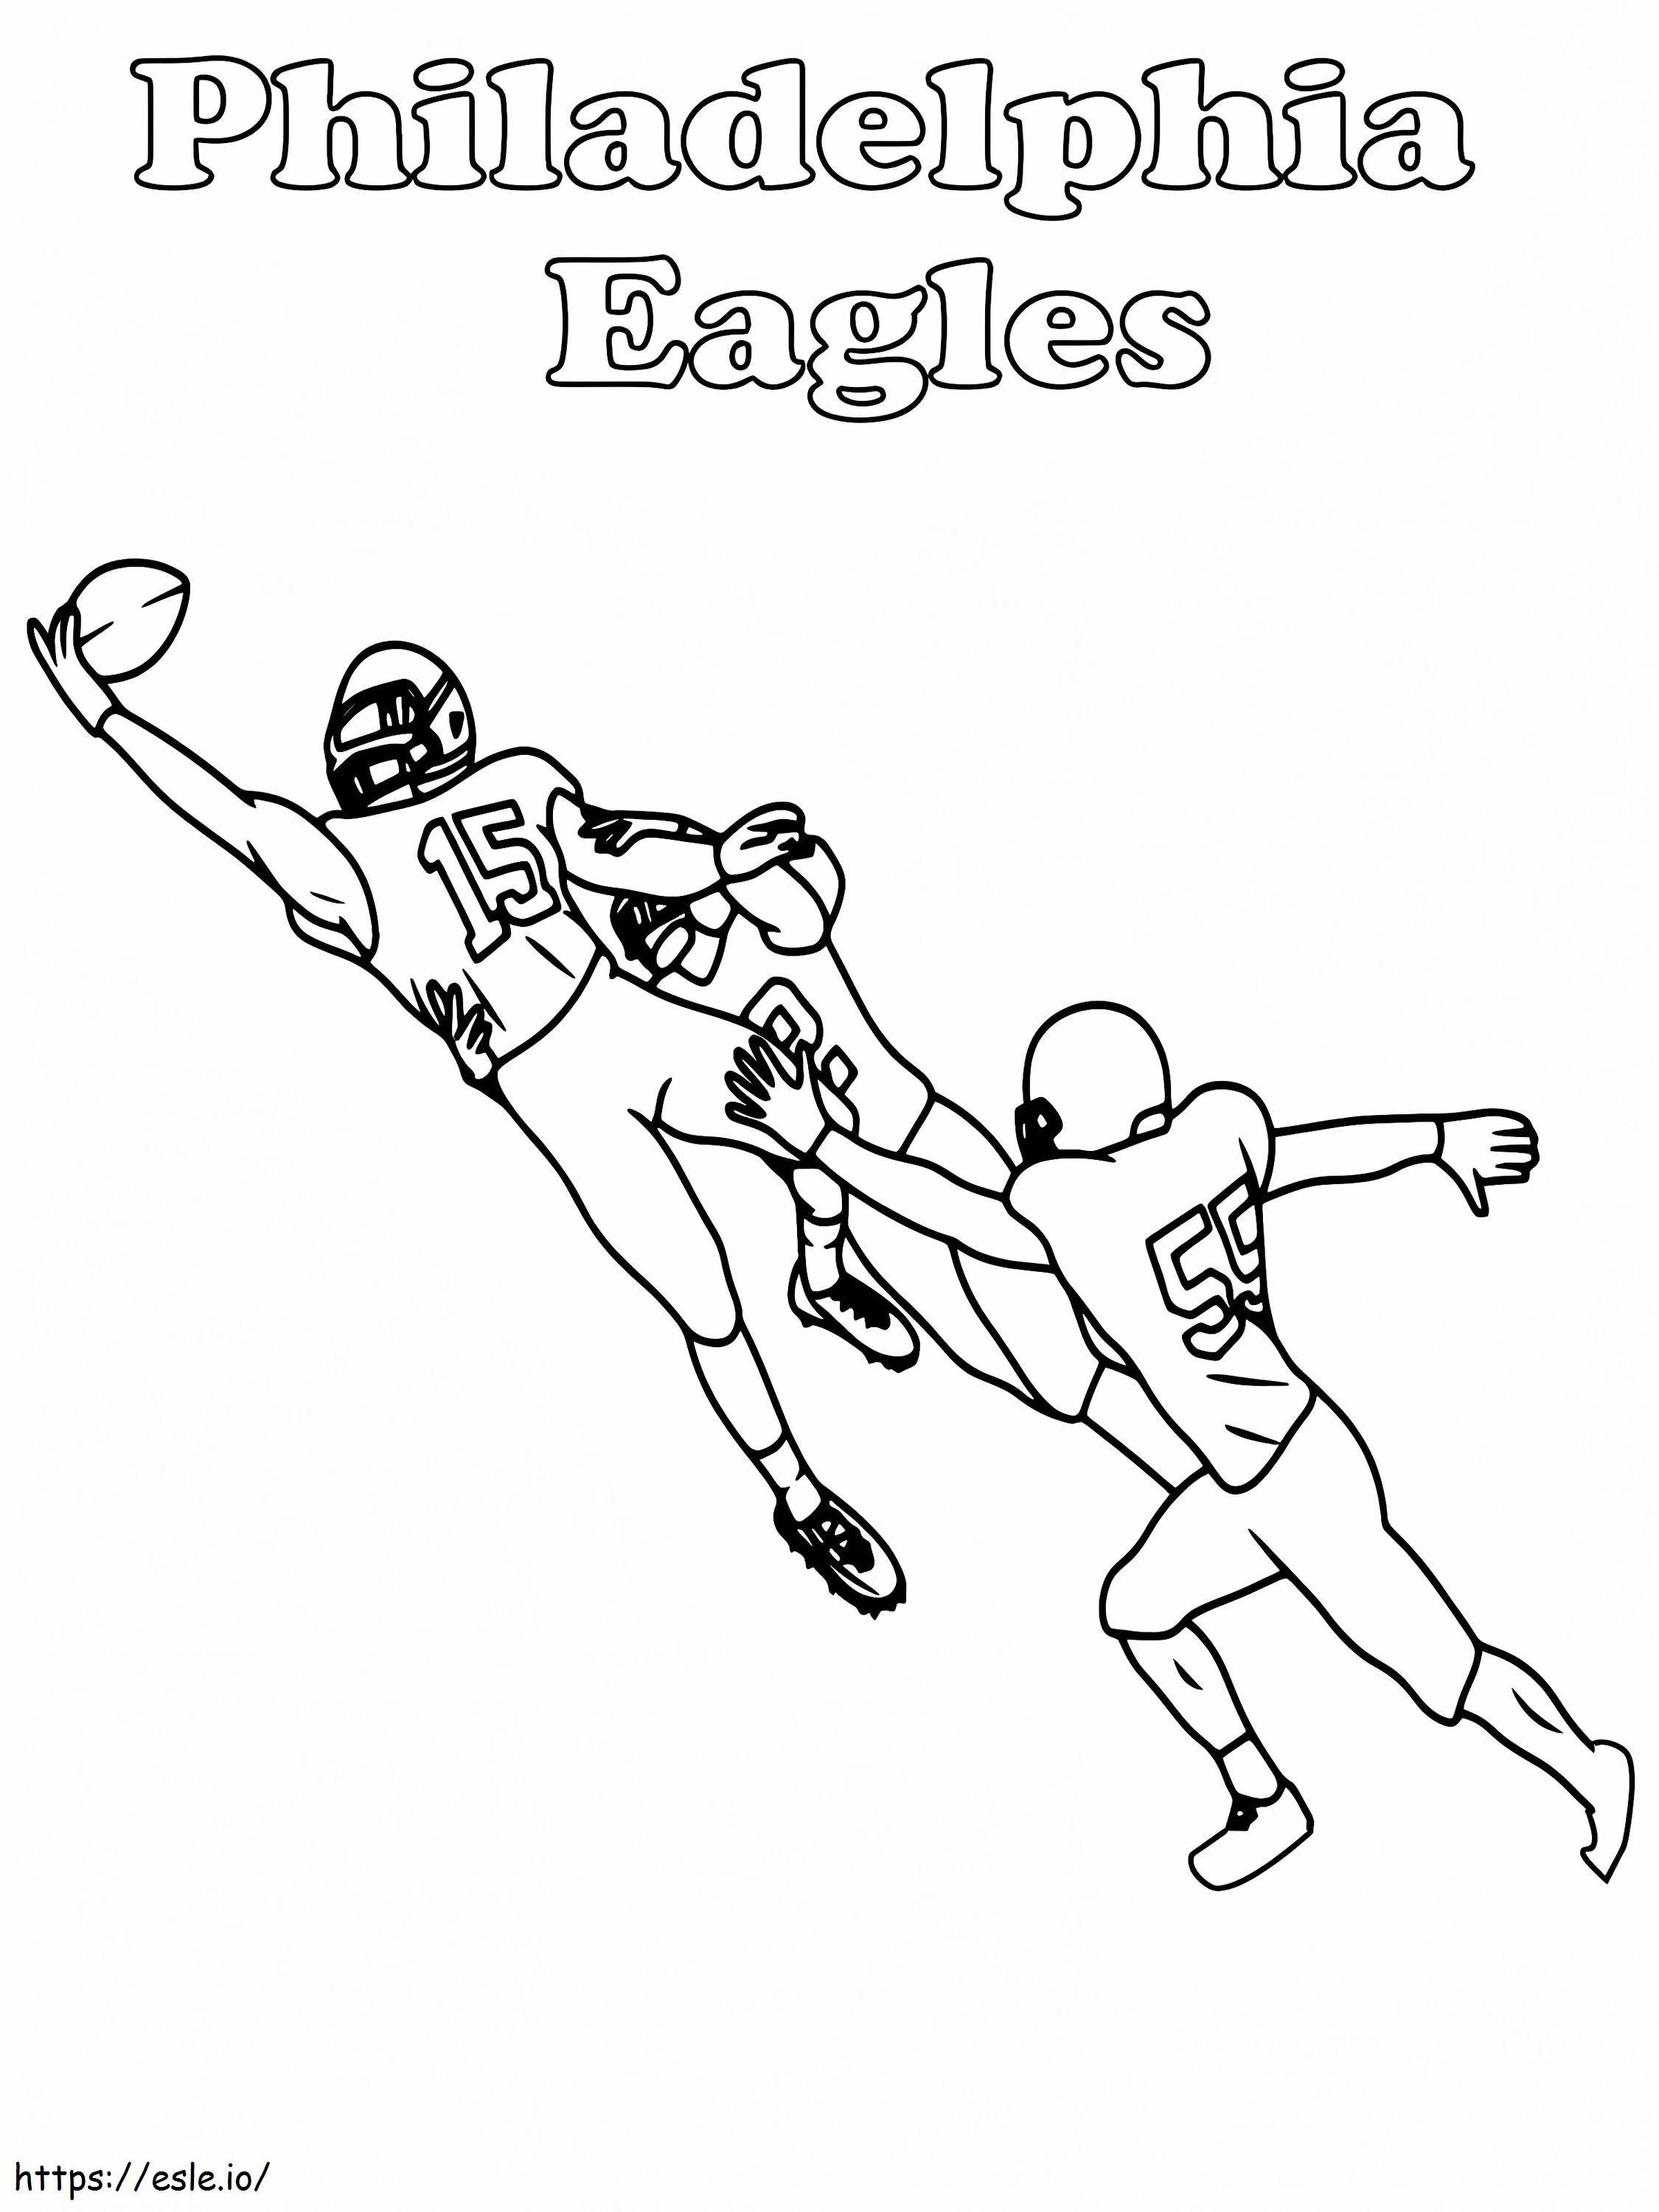 Philadelphia Eagles játékosfogás kifestő